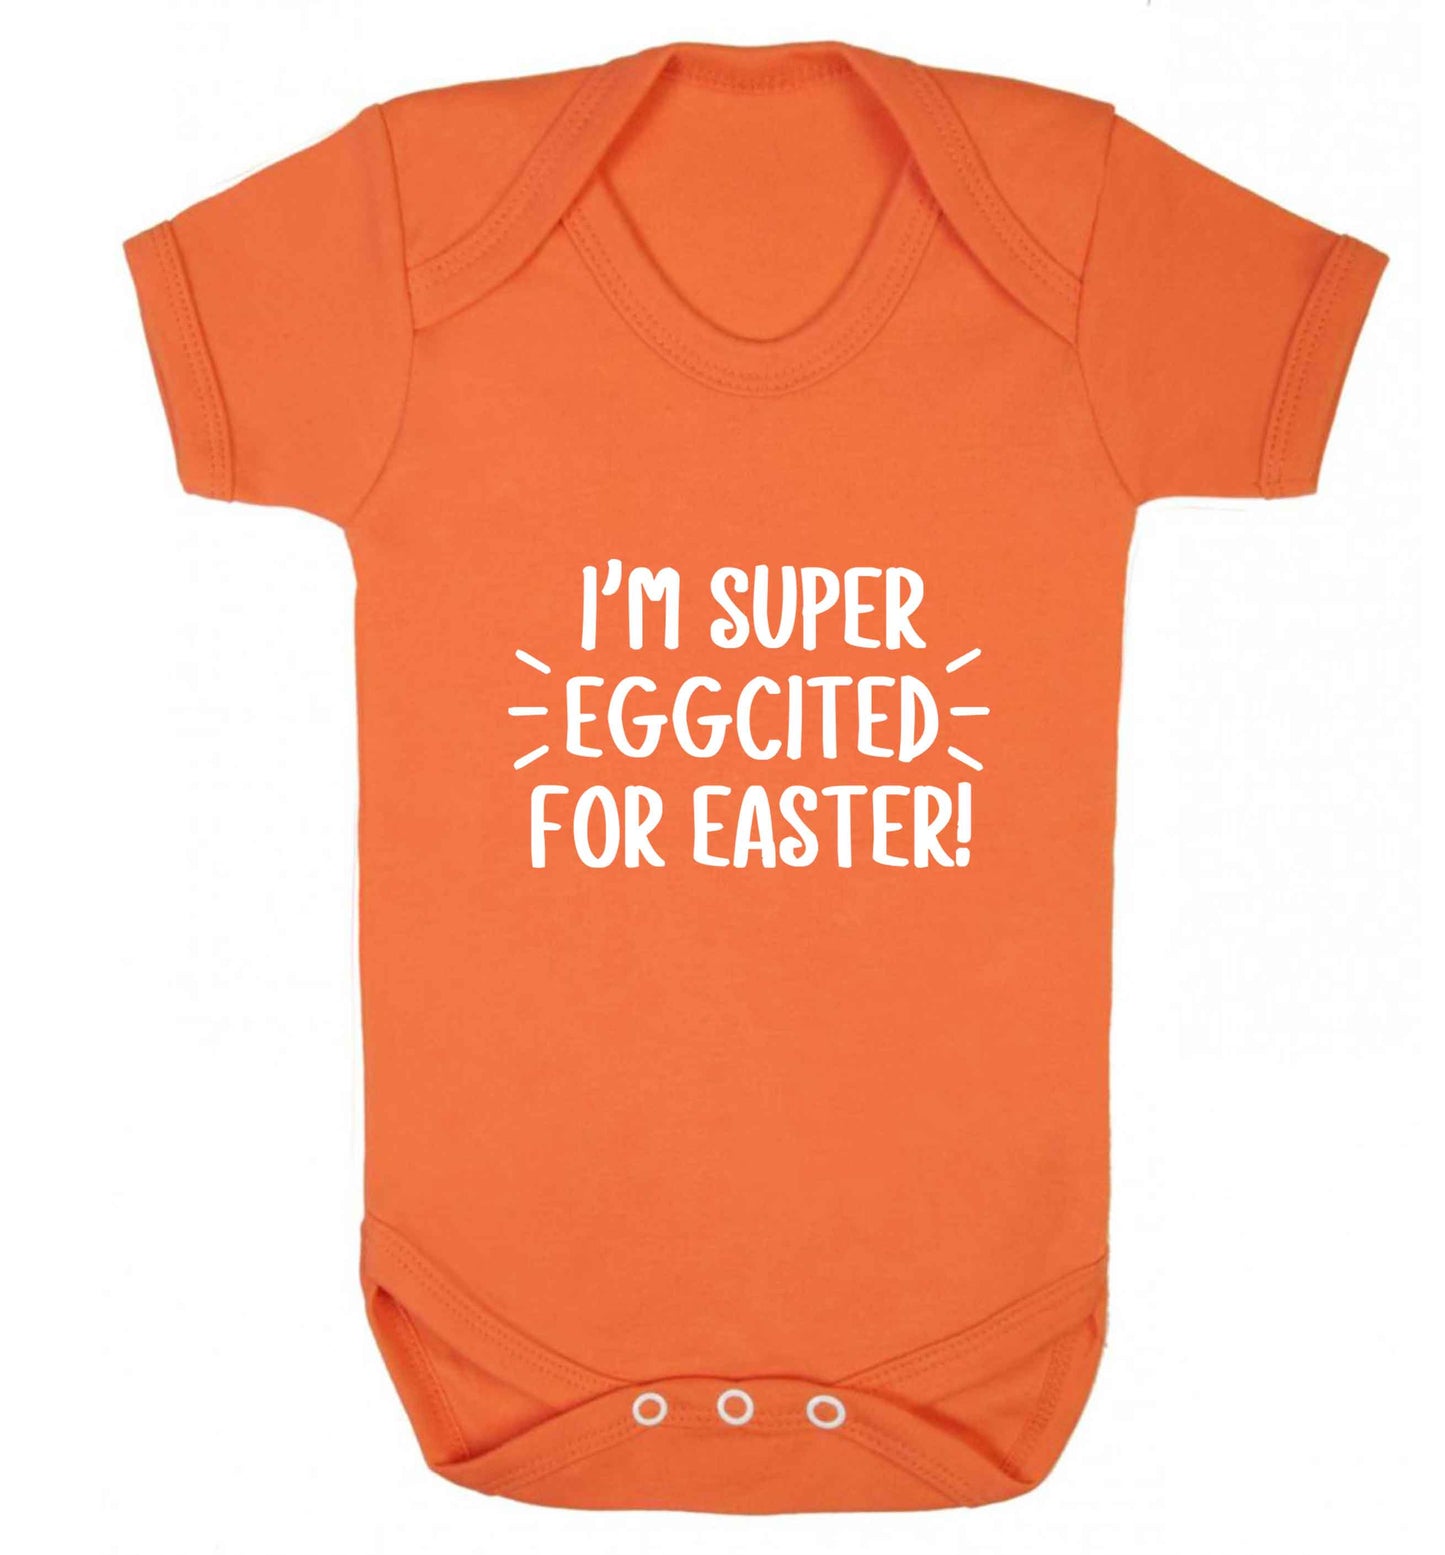 I'm super eggcited for Easter baby vest orange 18-24 months